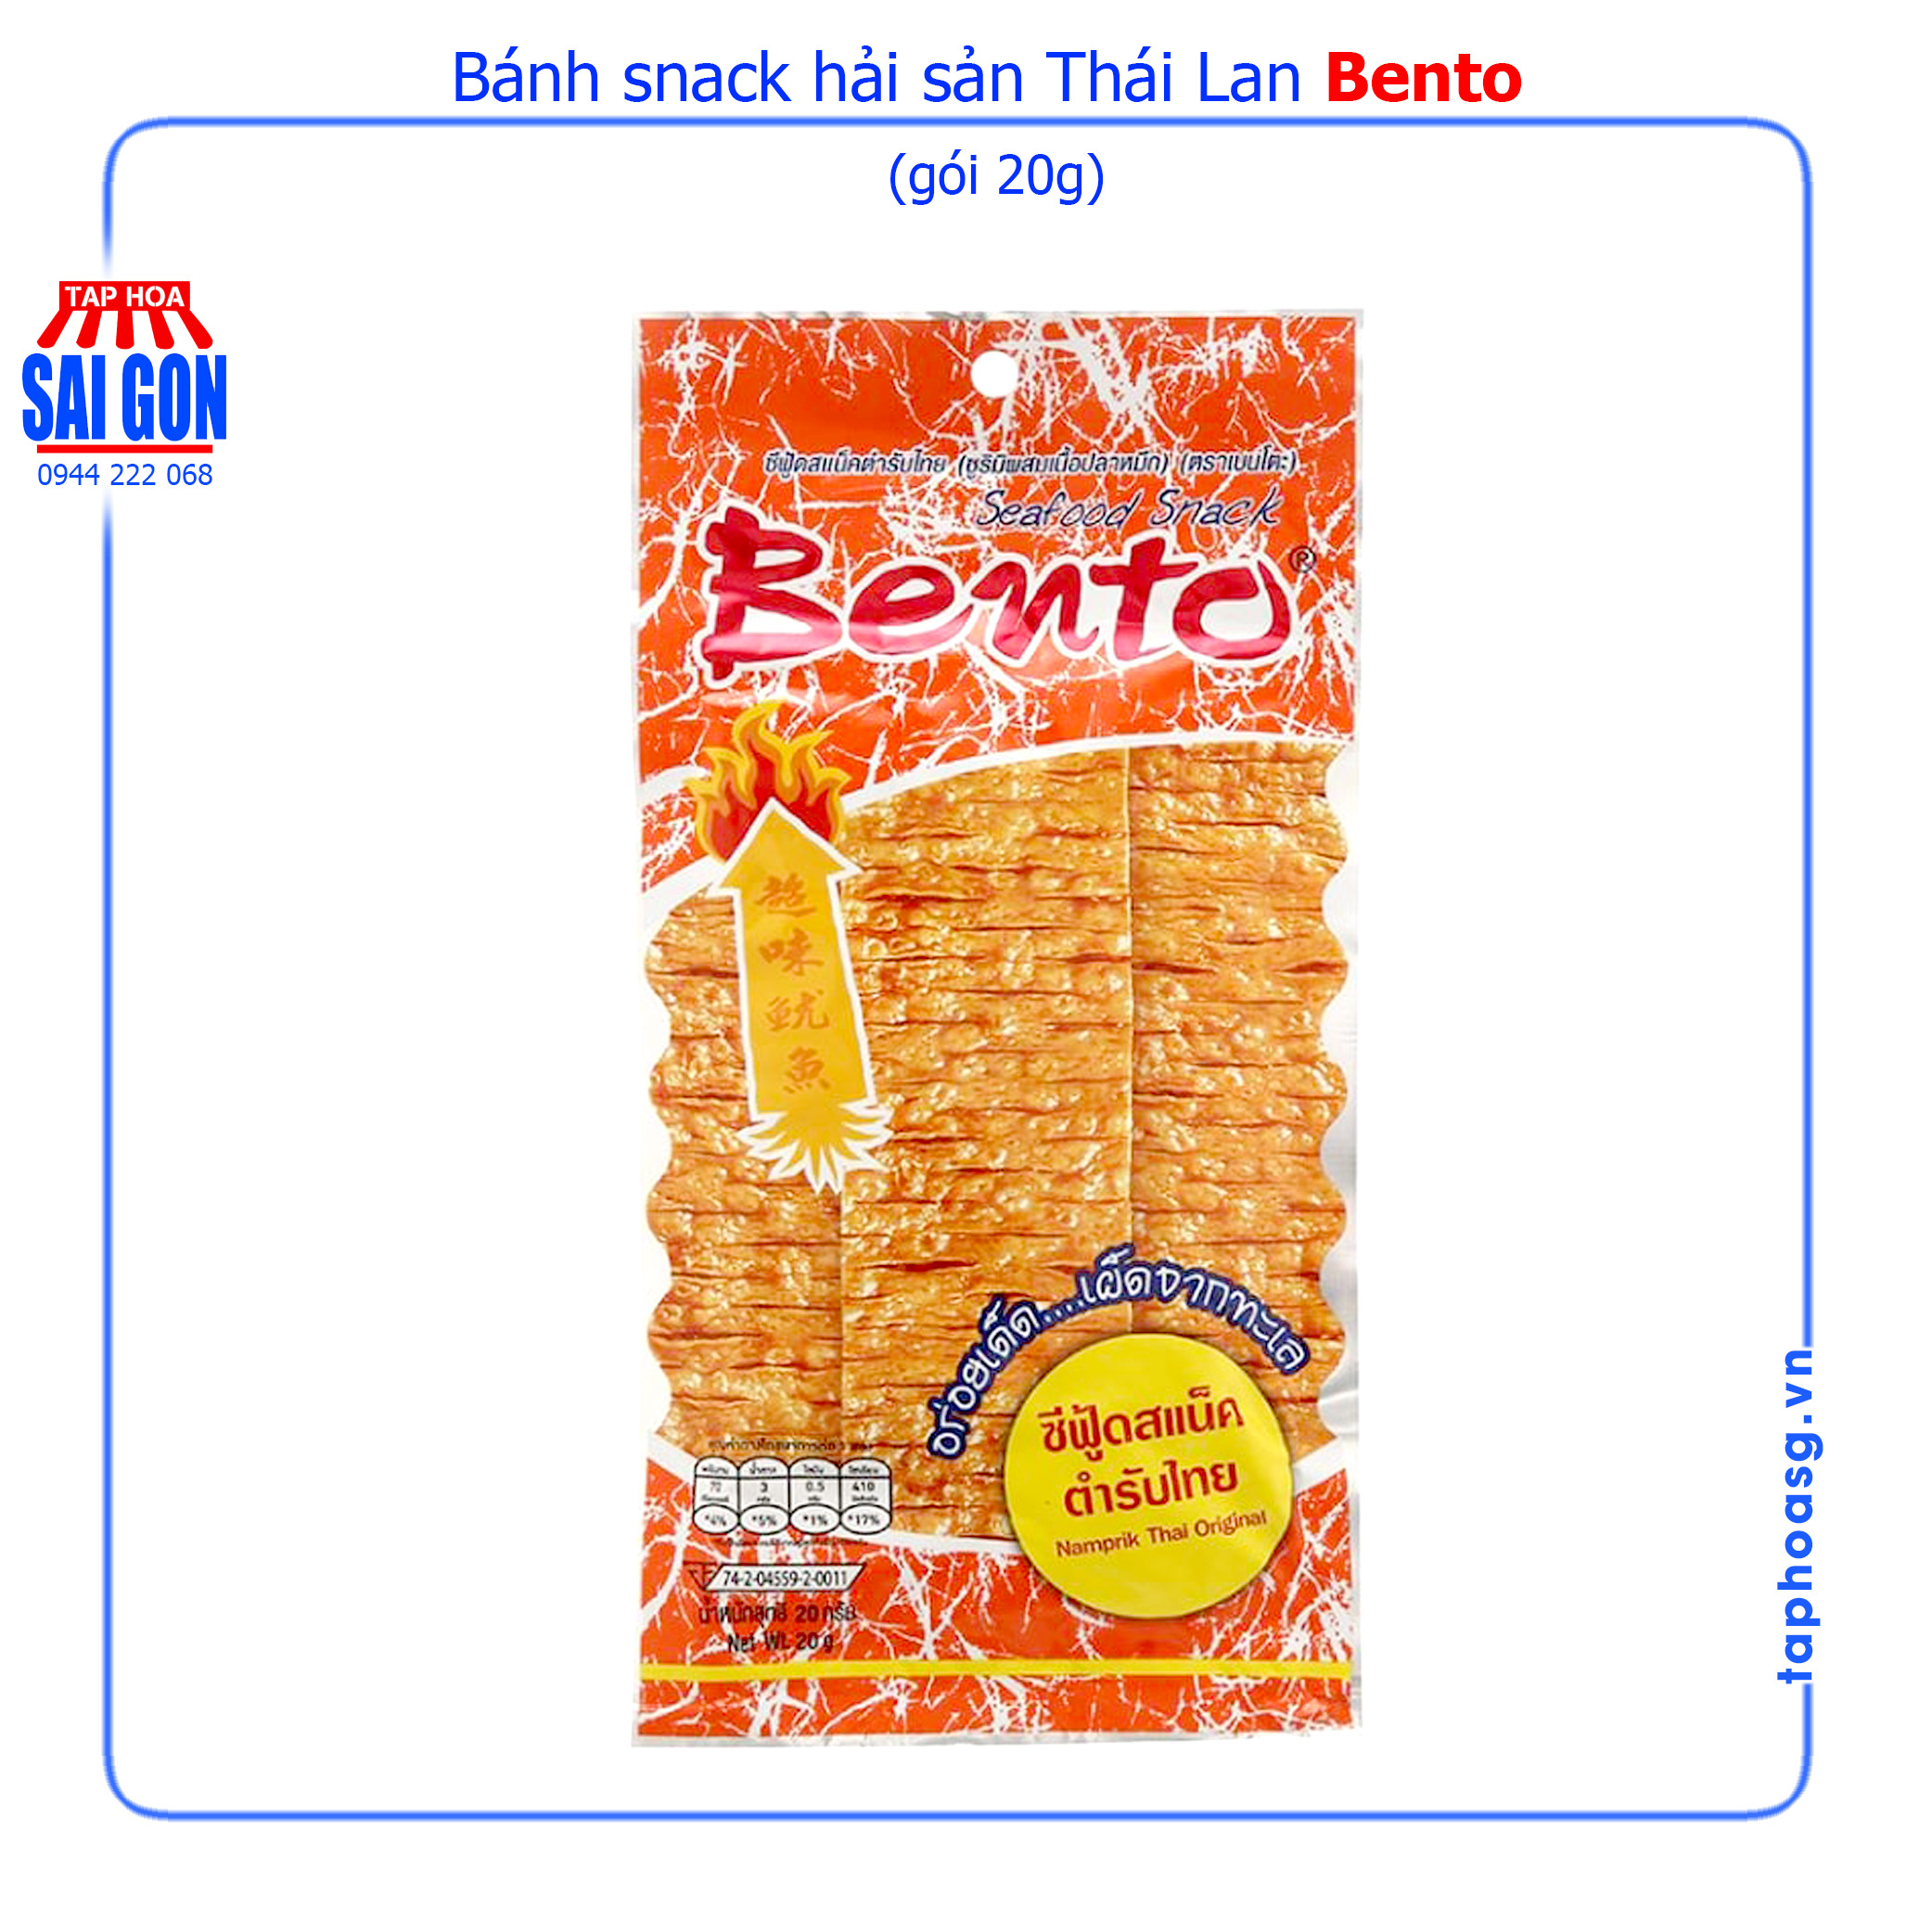 Bánh snack hải sản Bento gói 20g với các gia vị Thái Lan mang đến vị cay